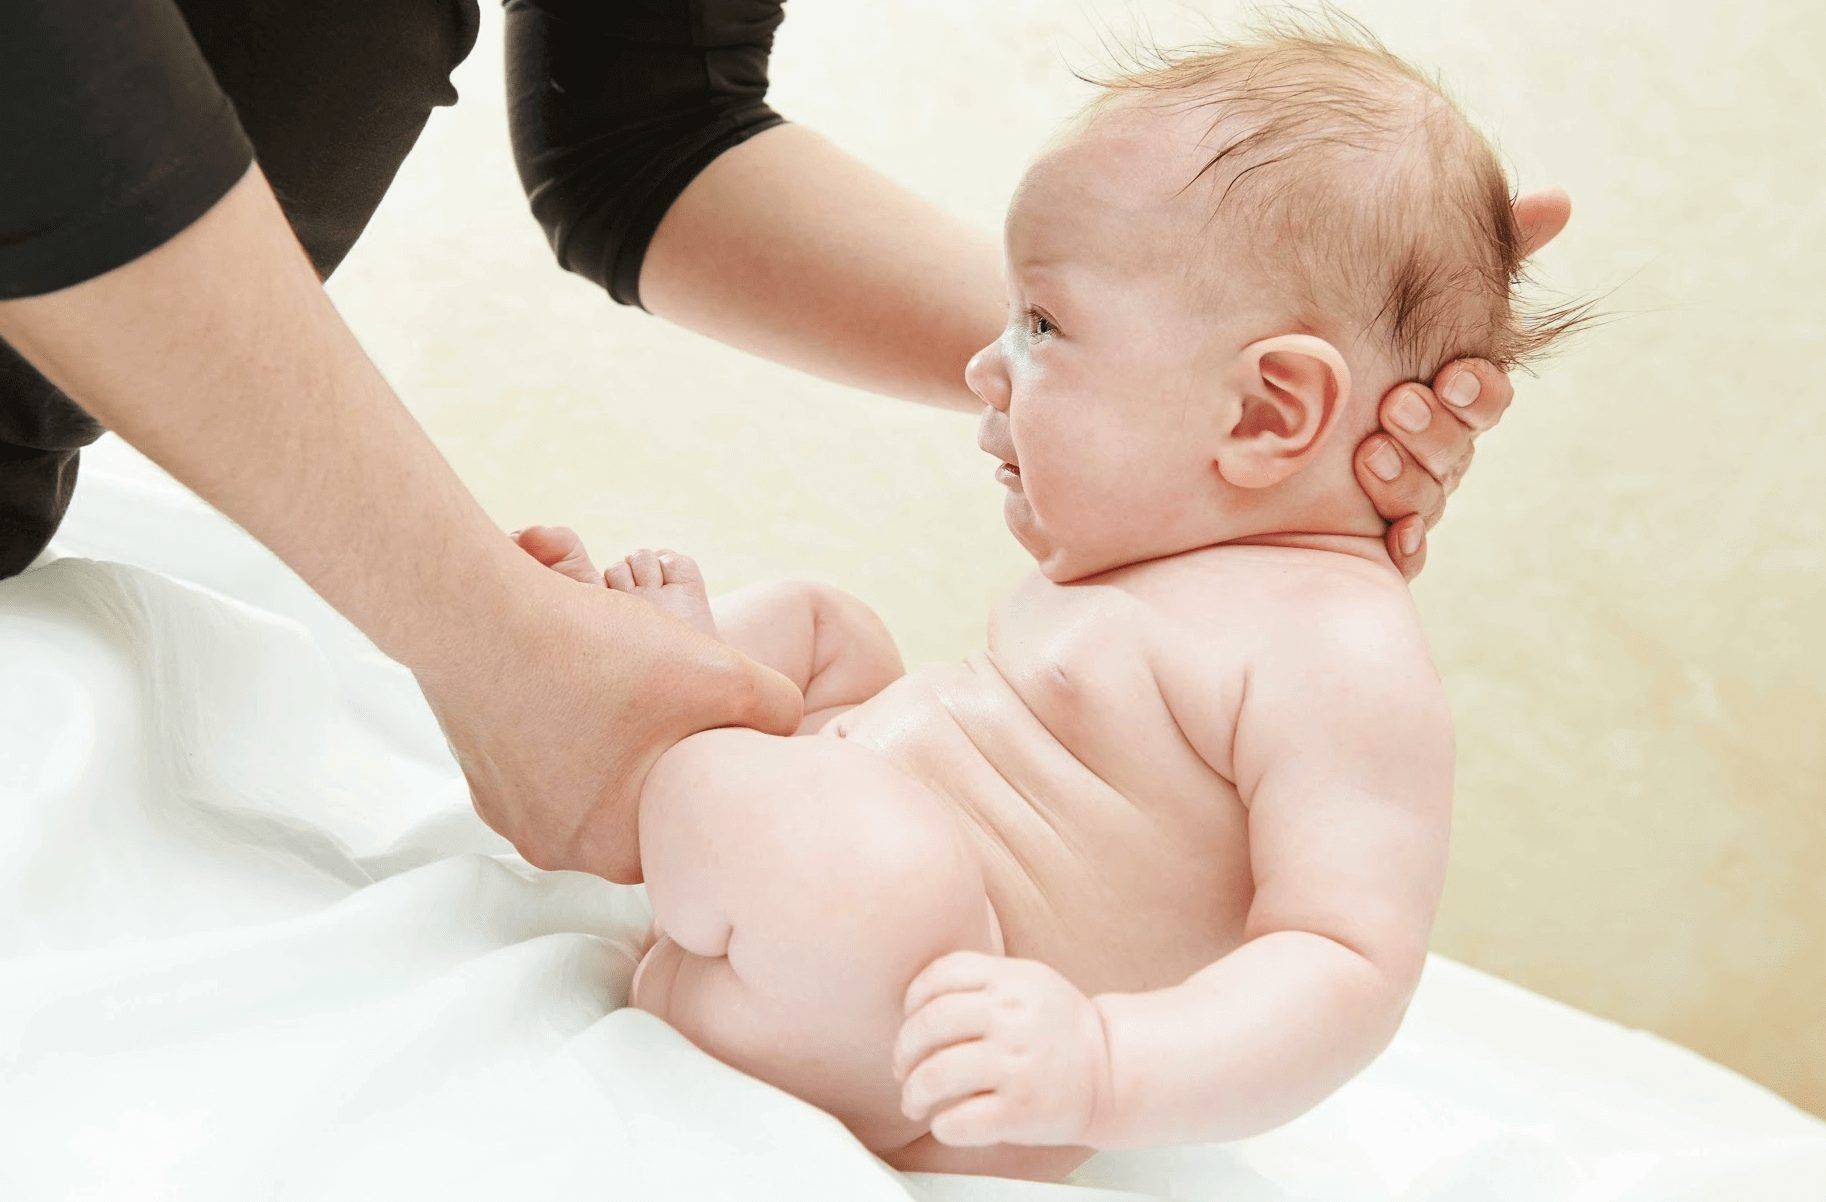 Запор у детей в 3 месяца: как помочь наворожённому малышу при запоре | микролакс®